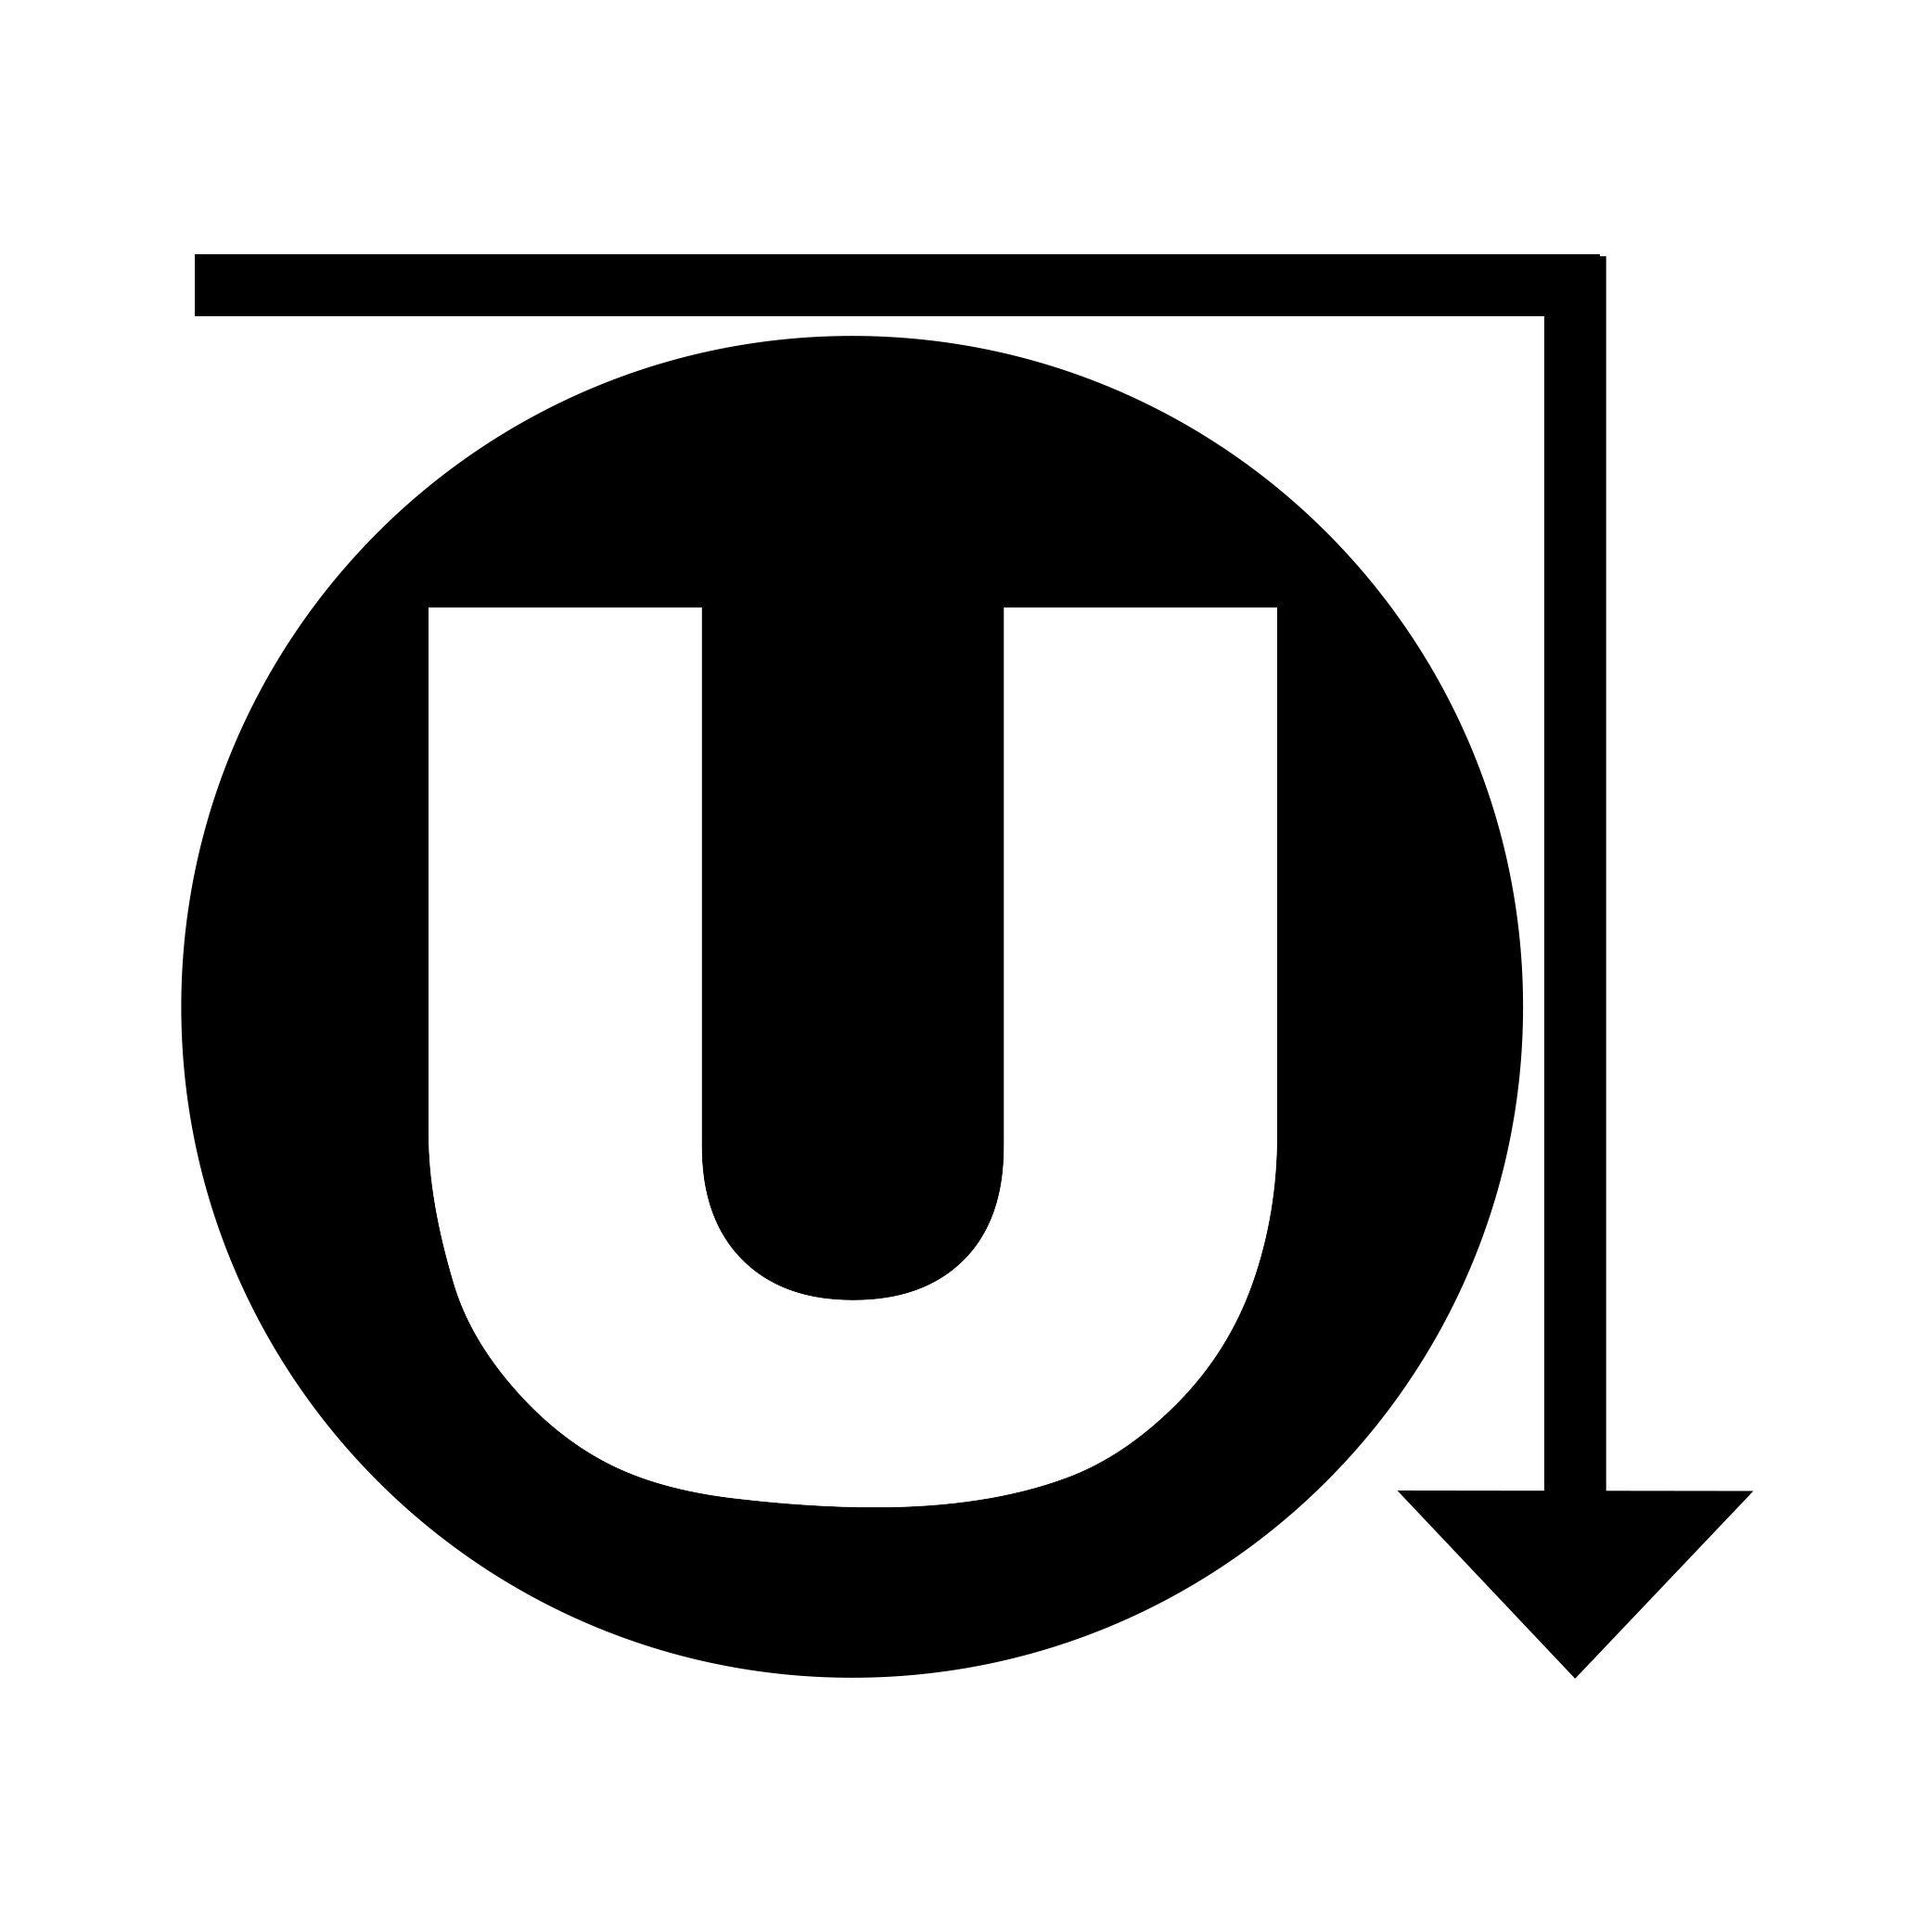 The Underground Logo - The Underground